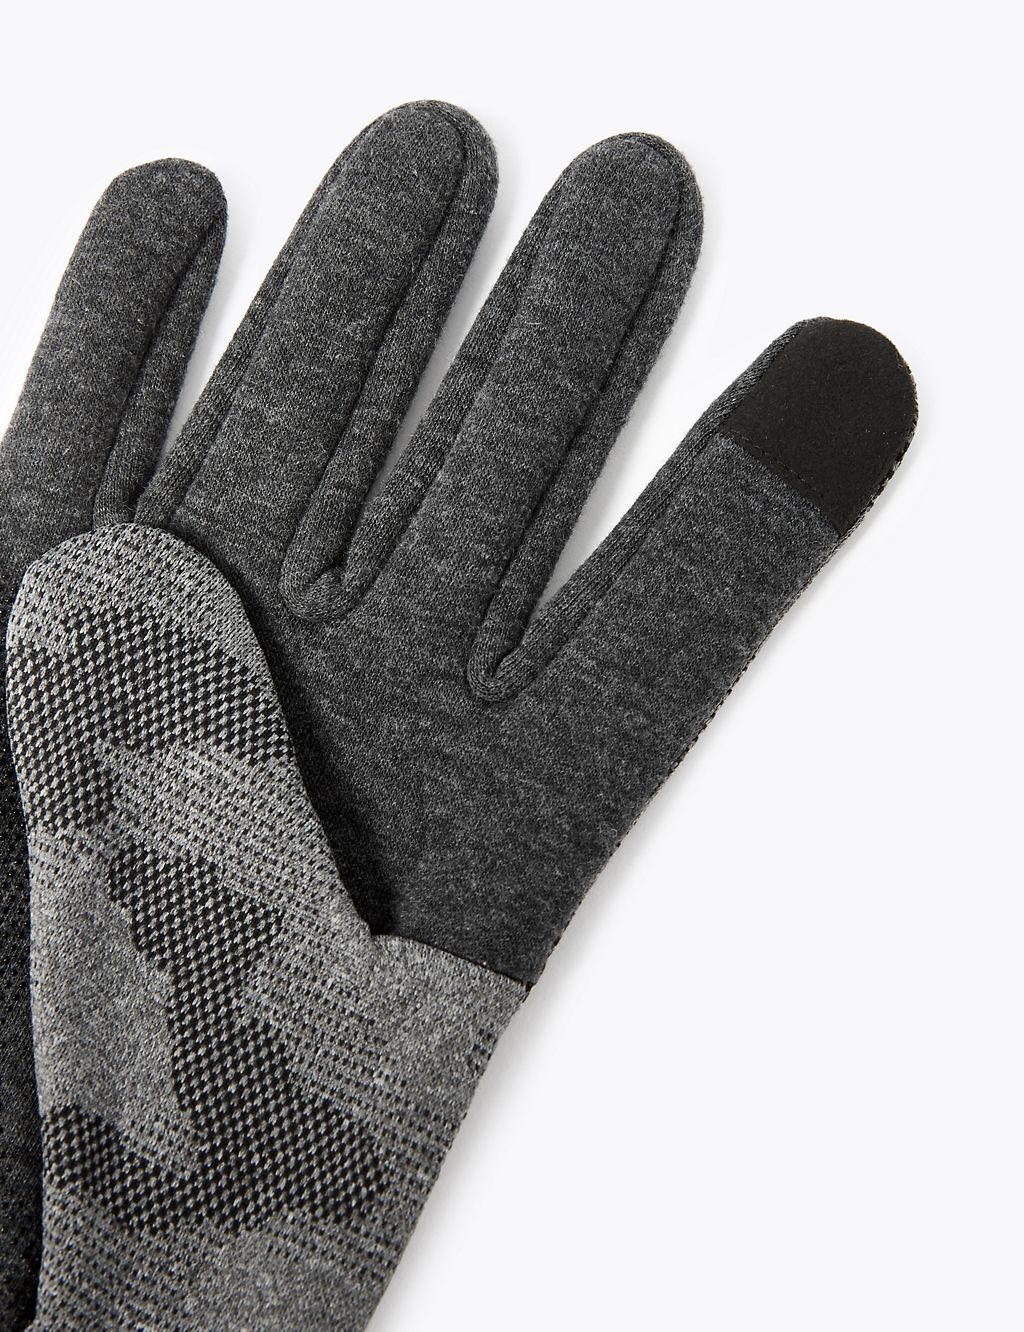 Camo Touchscreen Gloves 2 of 2